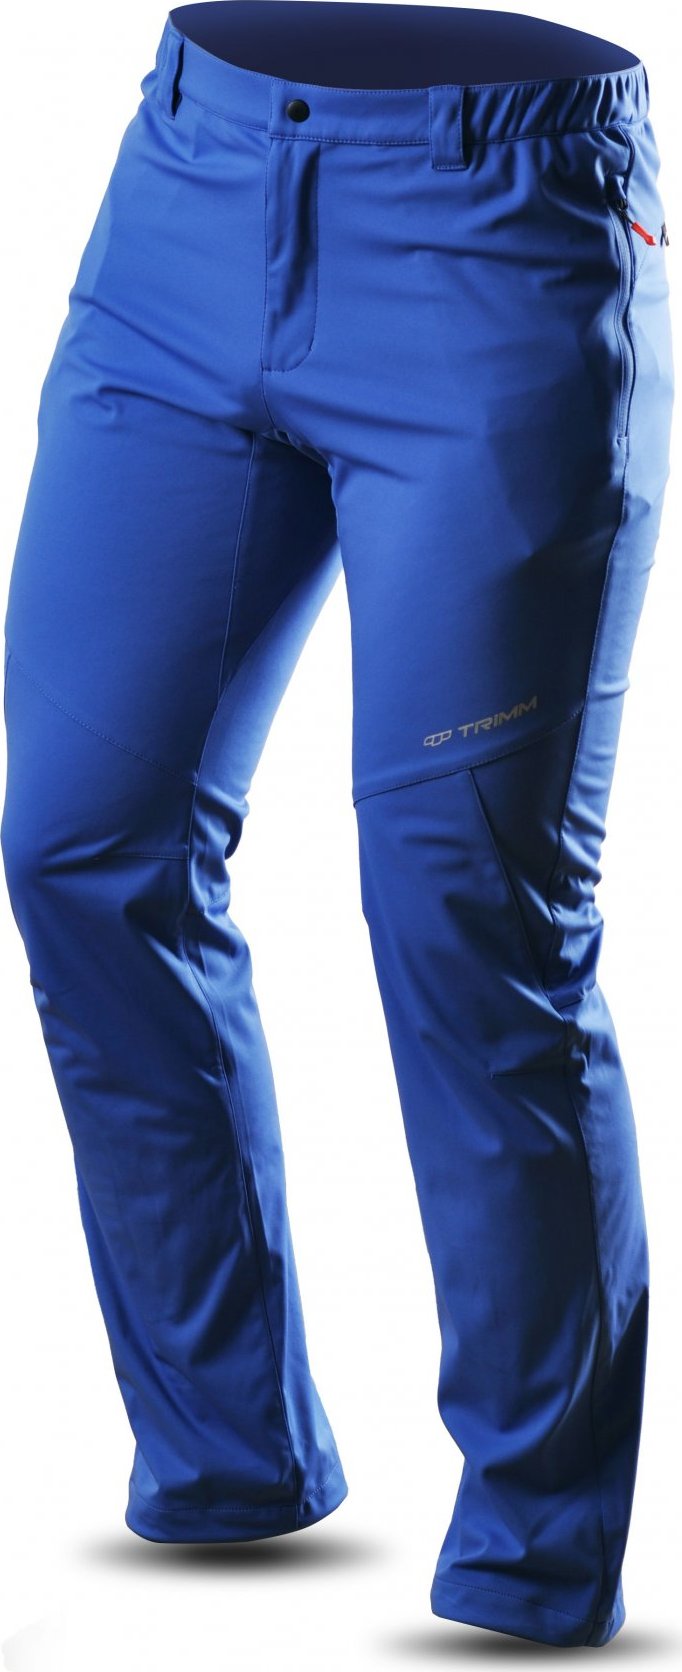 Pánské sportovní kalhoty TRIMM Roche Pants jeans blue Velikost: S, Barva: jeans blue